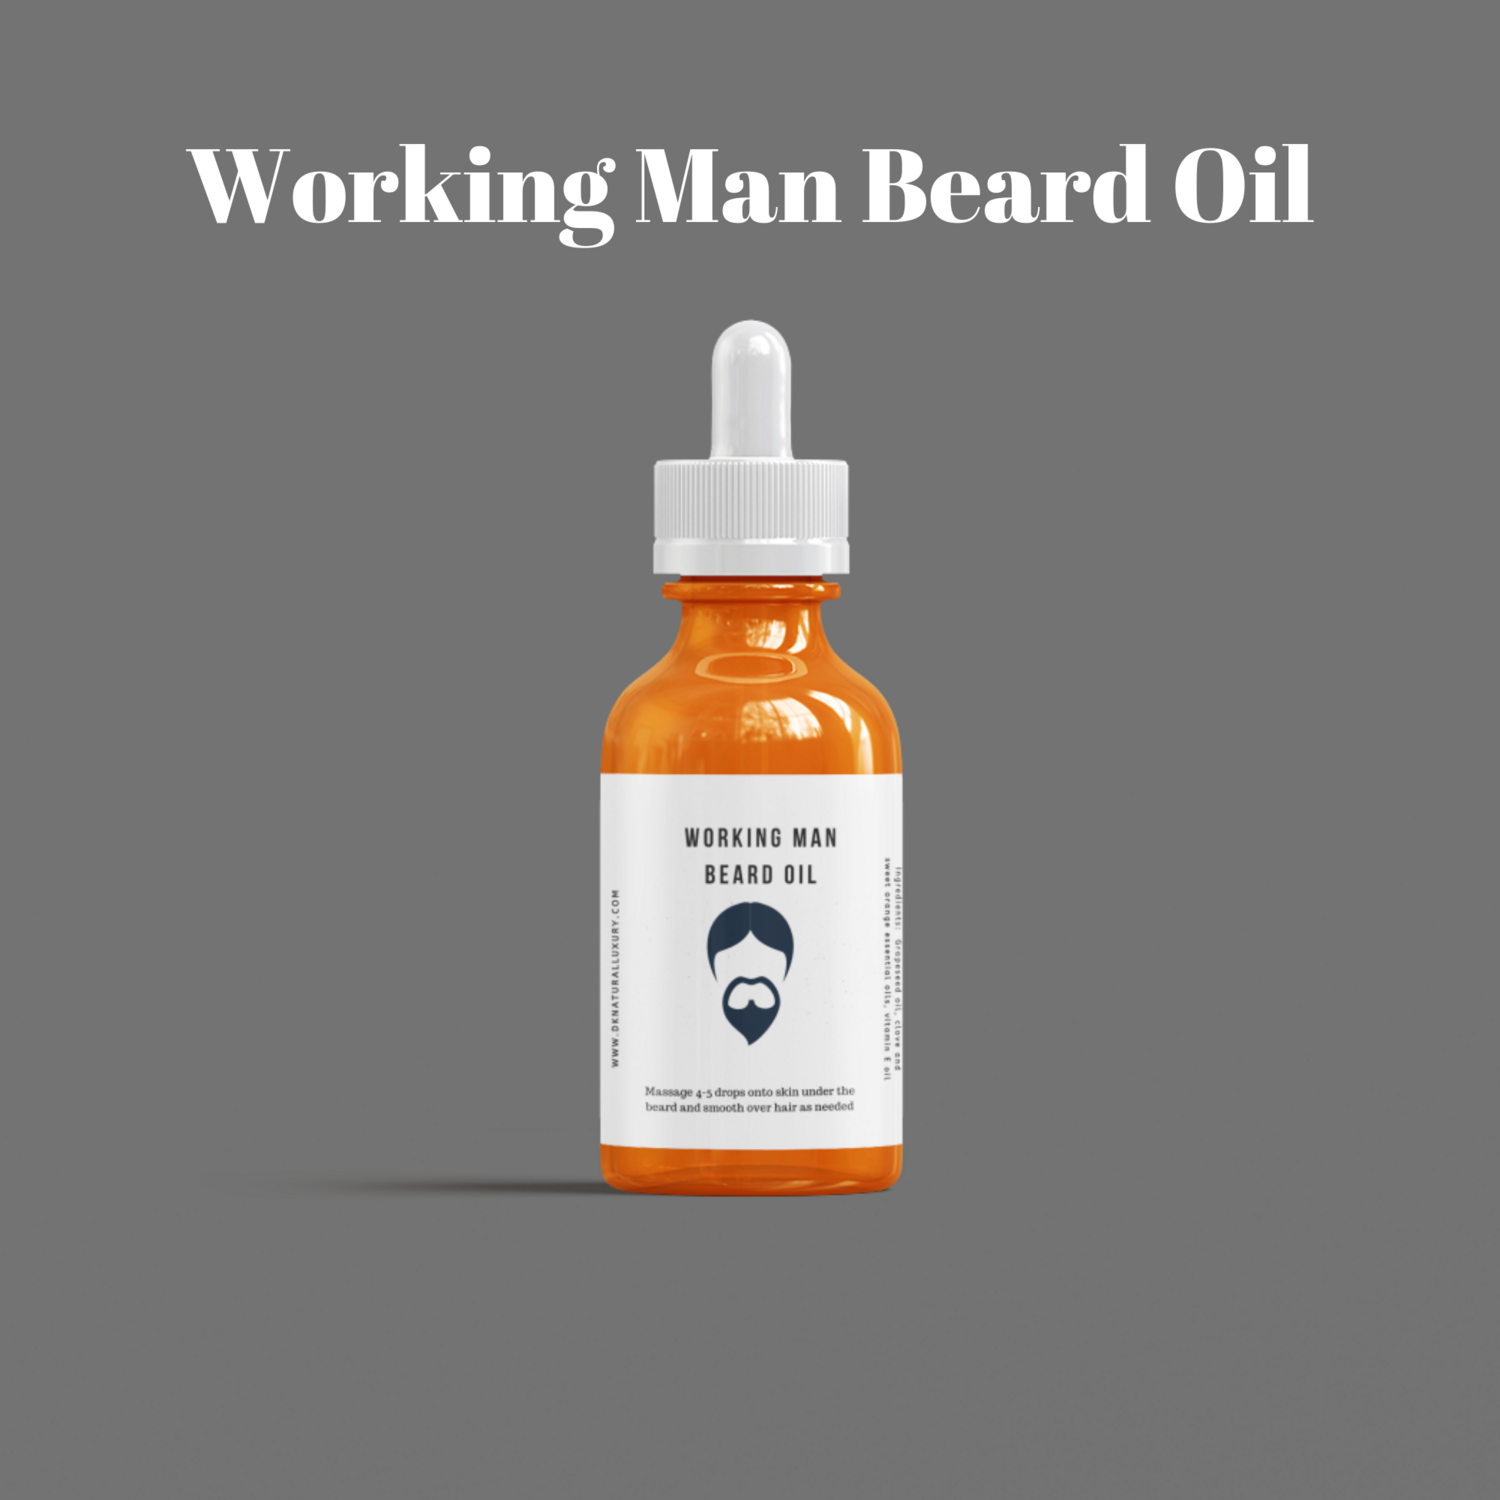 Working Man Beard Oil